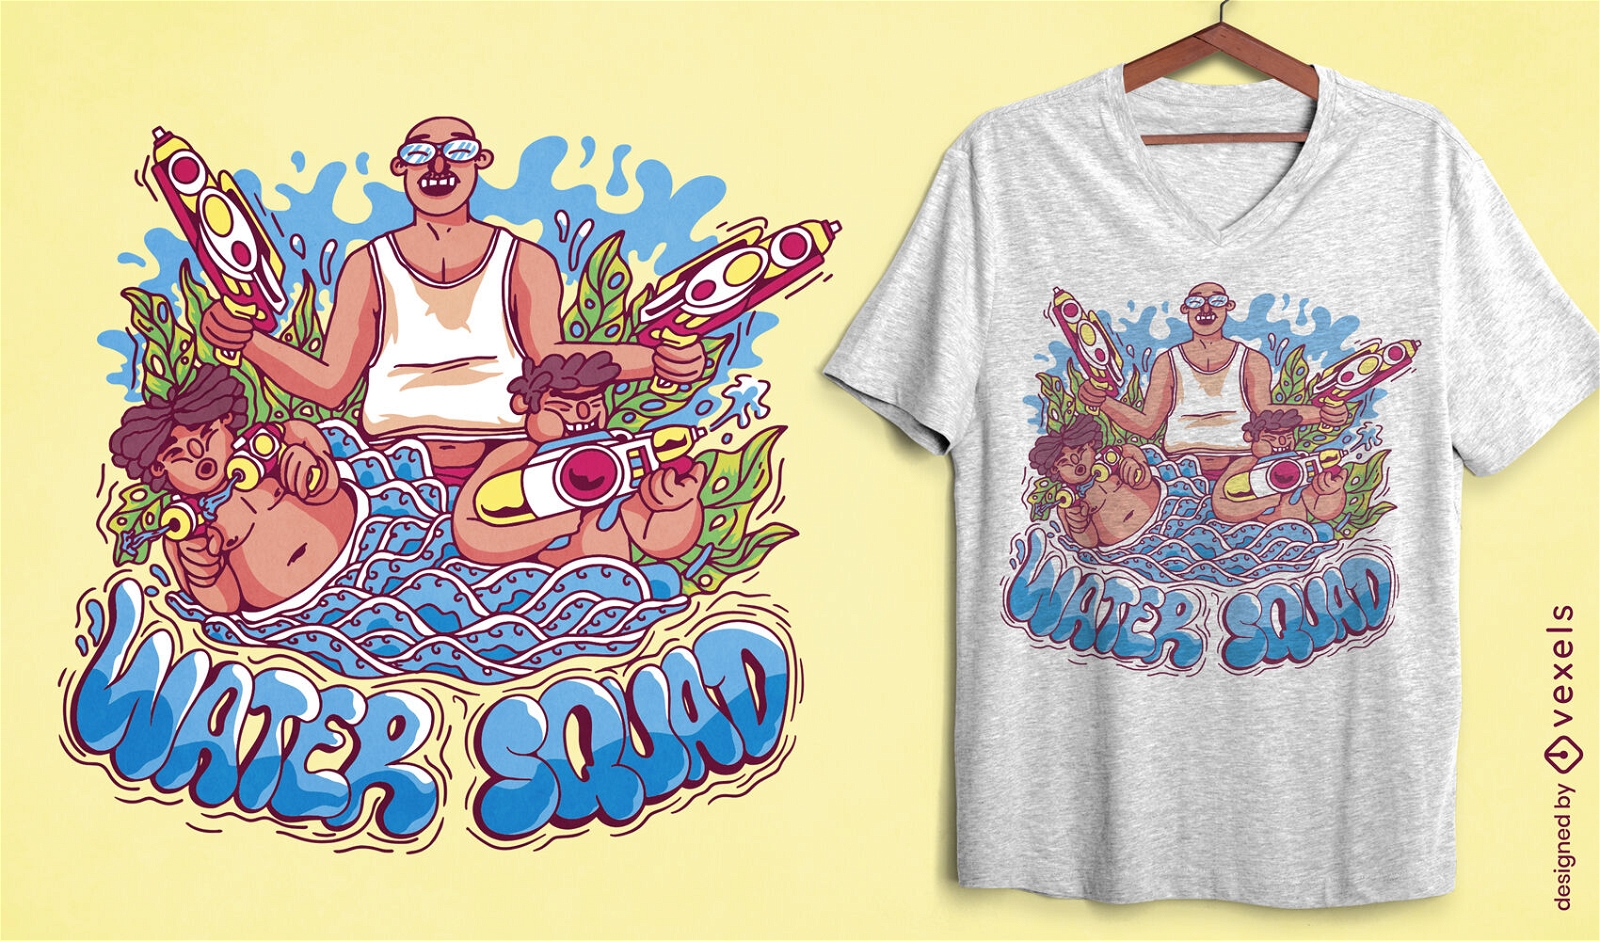 Songkran water festival t-shirt design